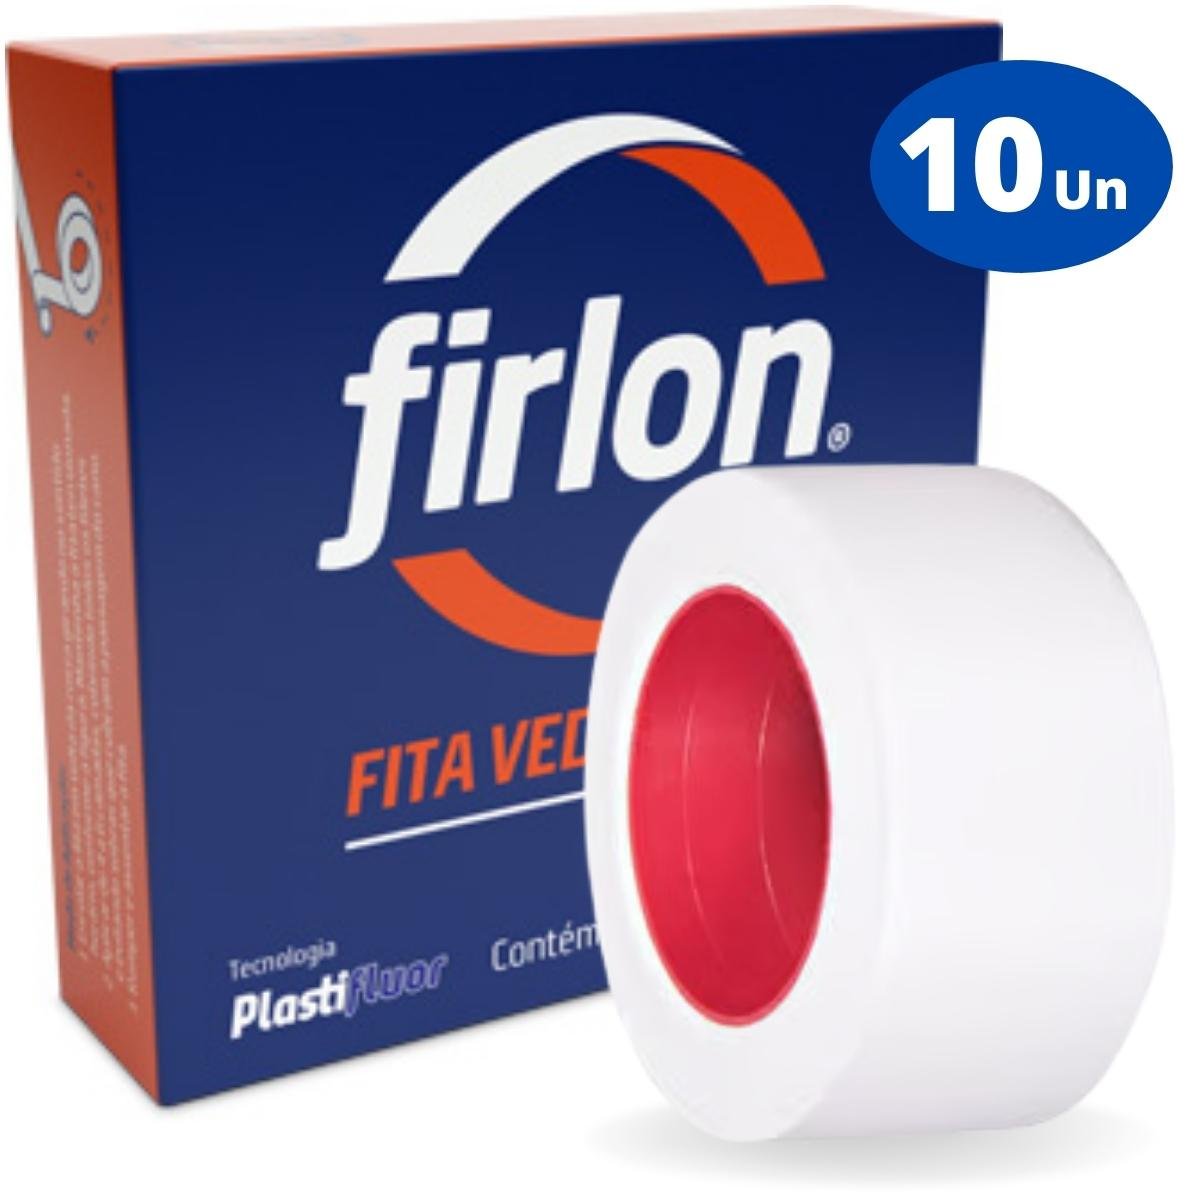 Fita Veda Rosca Teflon 18mm x 10m | Firlon | Kit 10 Un - 1